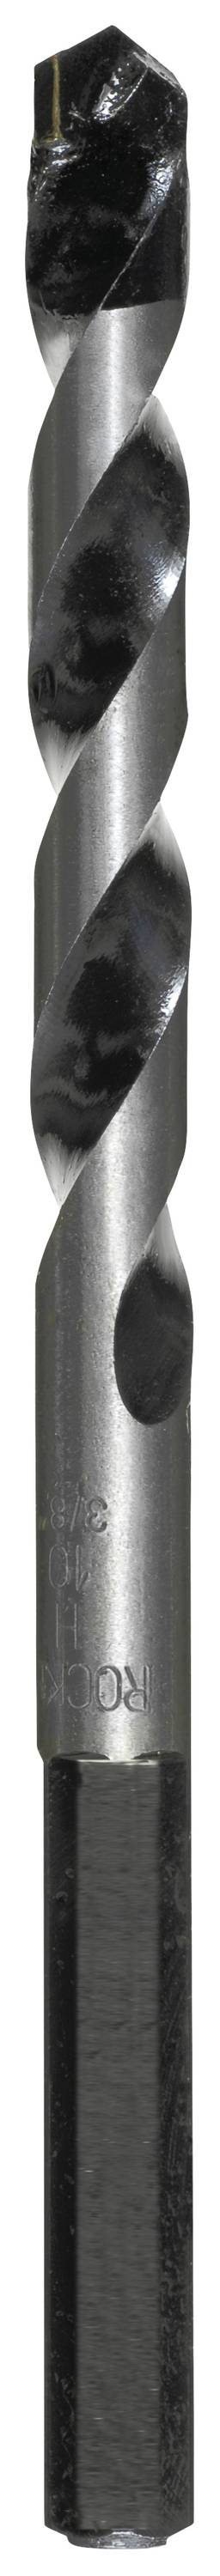 KWB 050650 Hartmetall Beton-Spiralbohrer 5.0 mm Gesamtlänge 100 mm Zylinderschaft 1 Stück (050650)